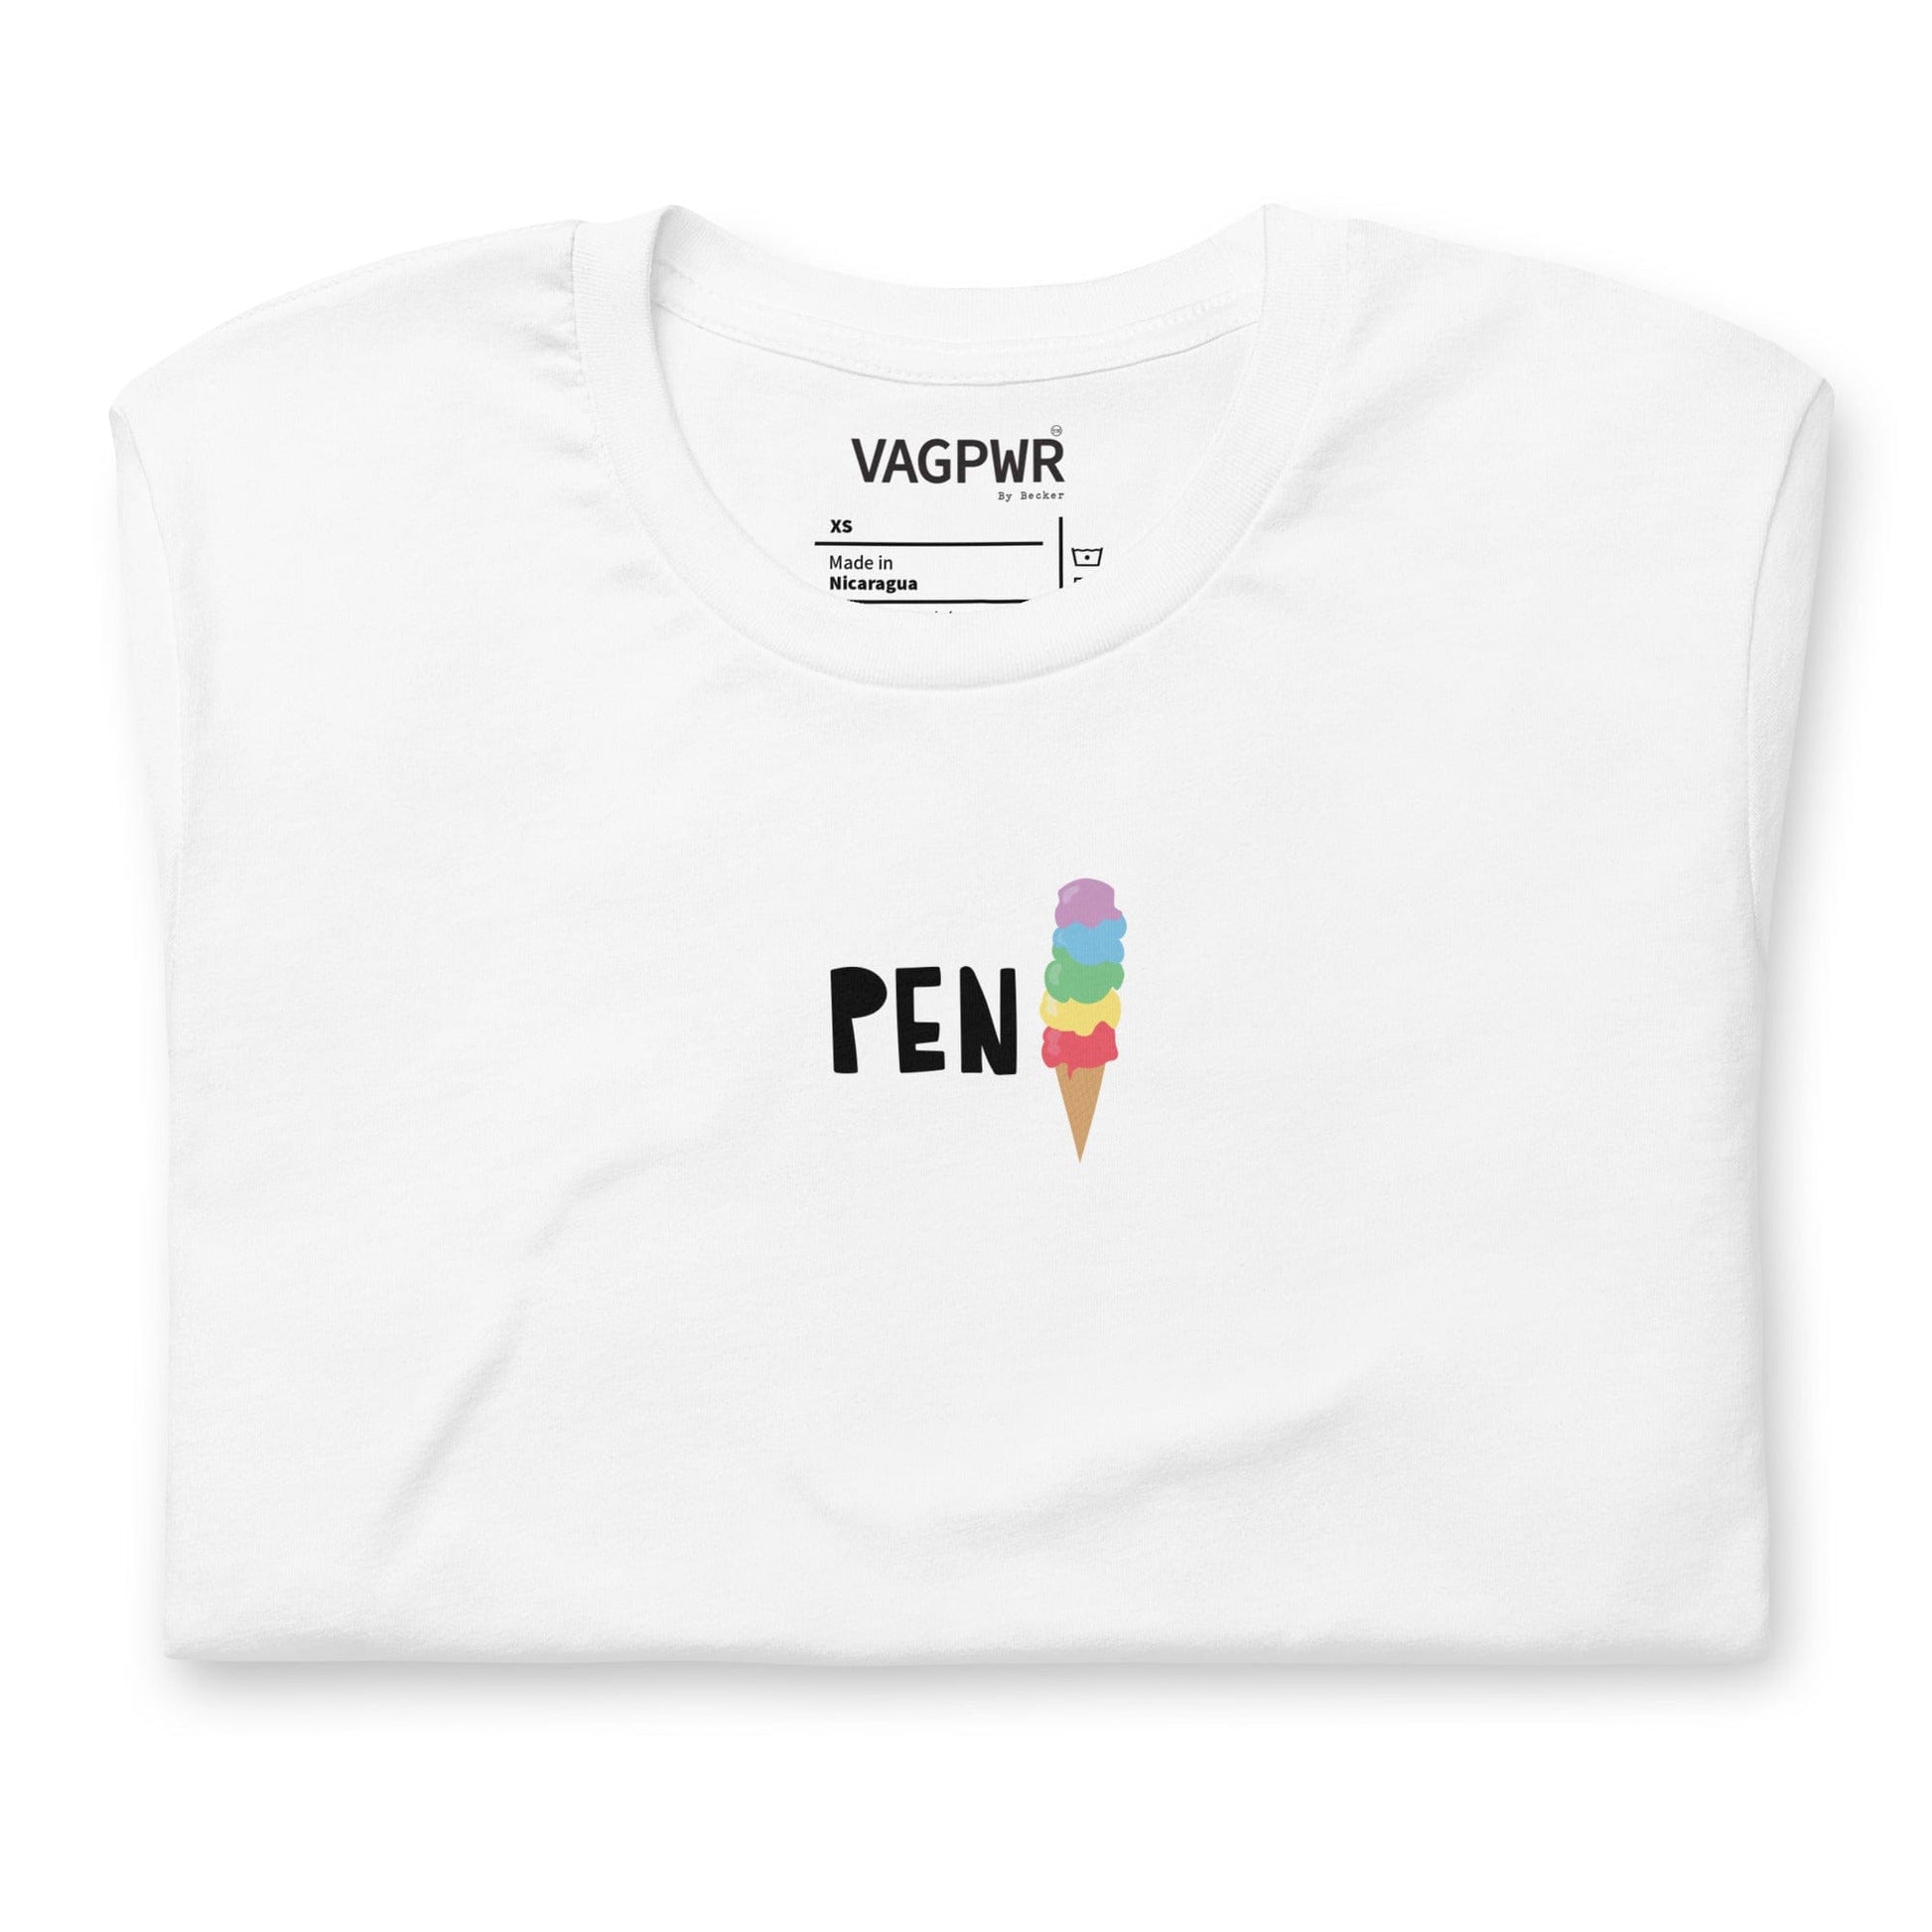 VAGPWR Pen(is) - Unisex t-shirt